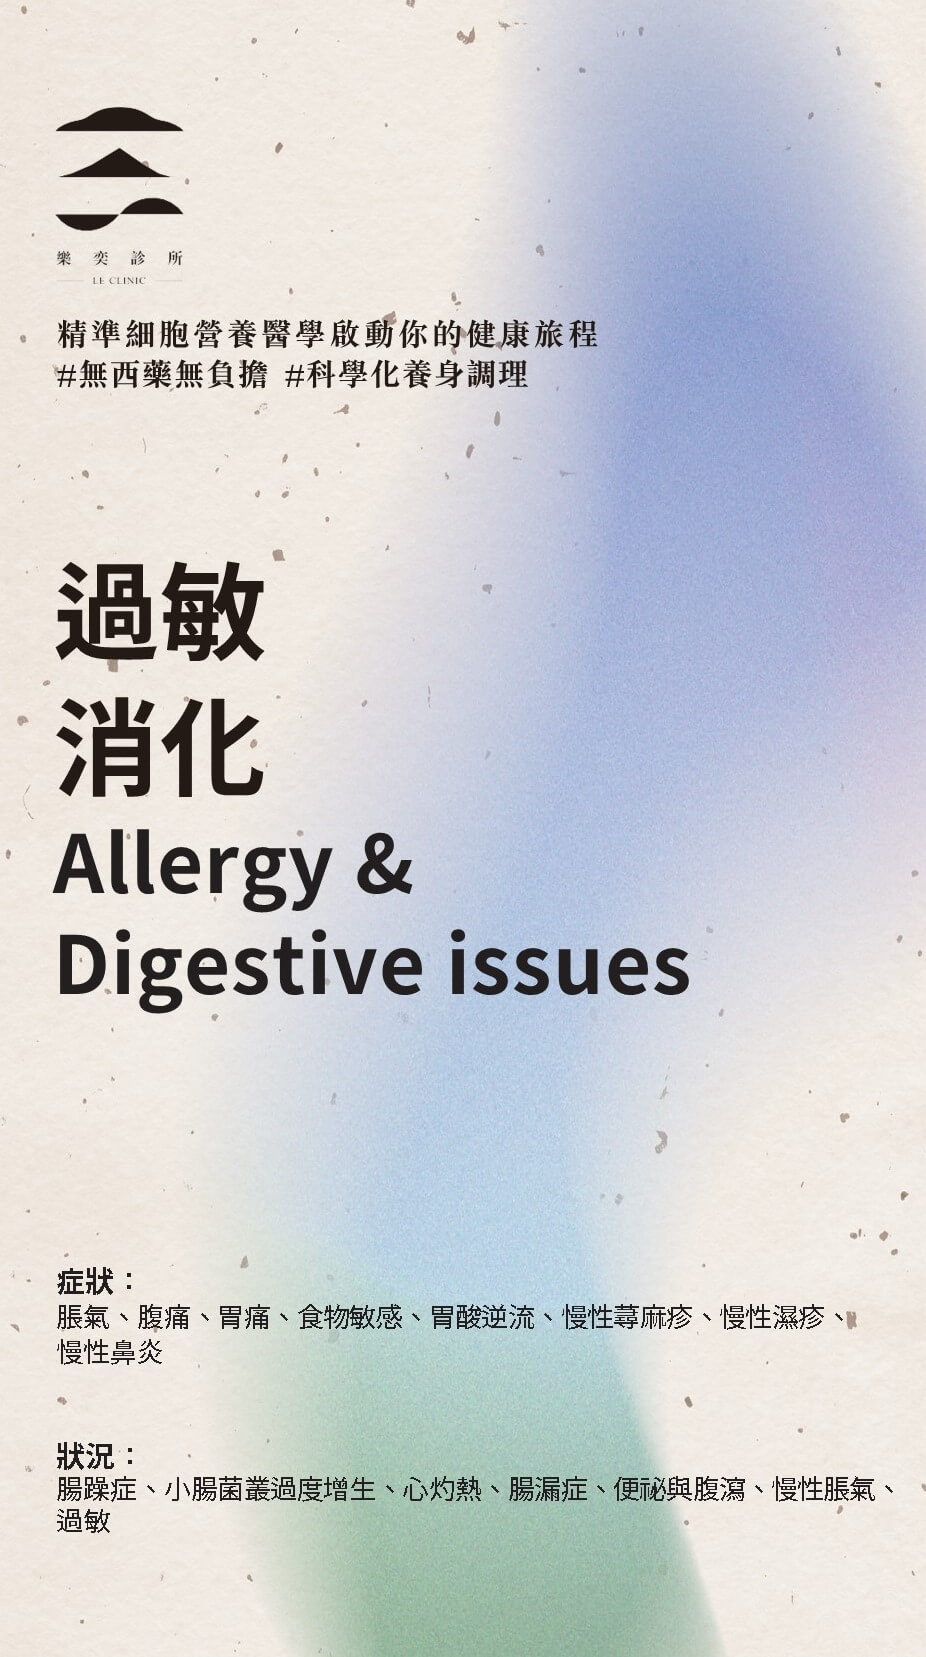 過敏消化 Allergy & Digestive issues - 主題